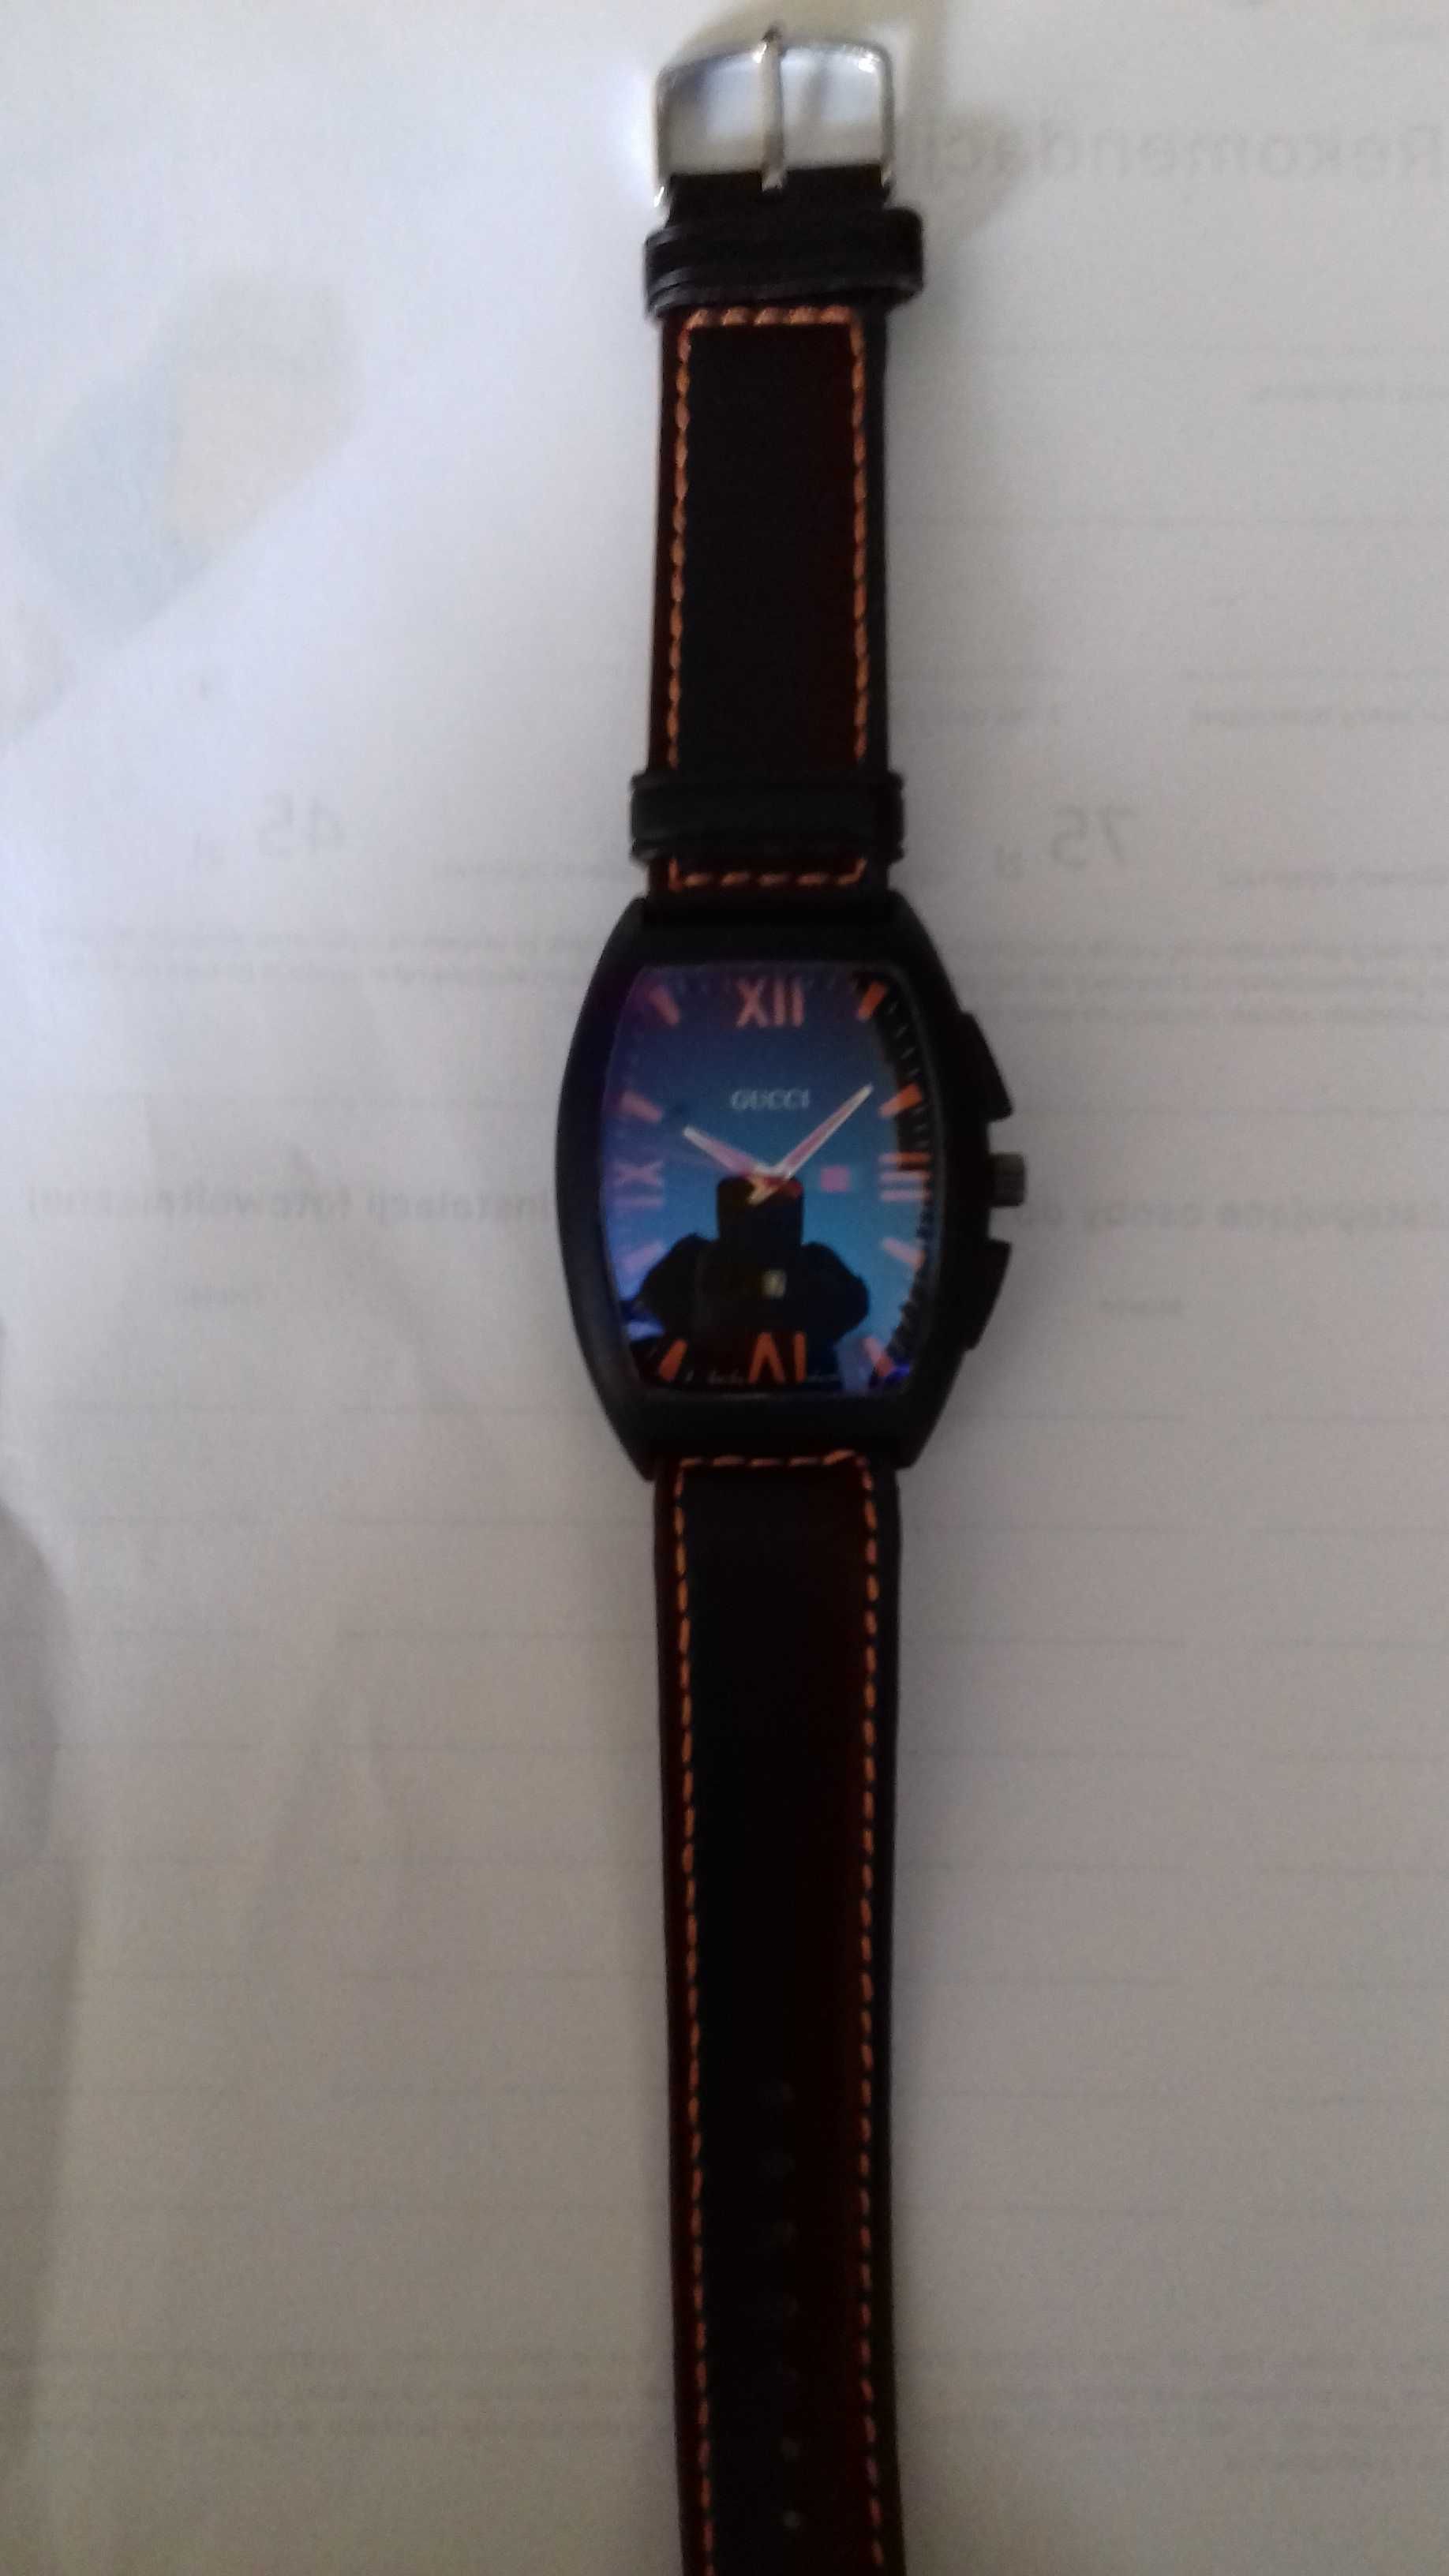 Zegarek Gucci czarny z pomarańczowym wykończeniem 279 zł